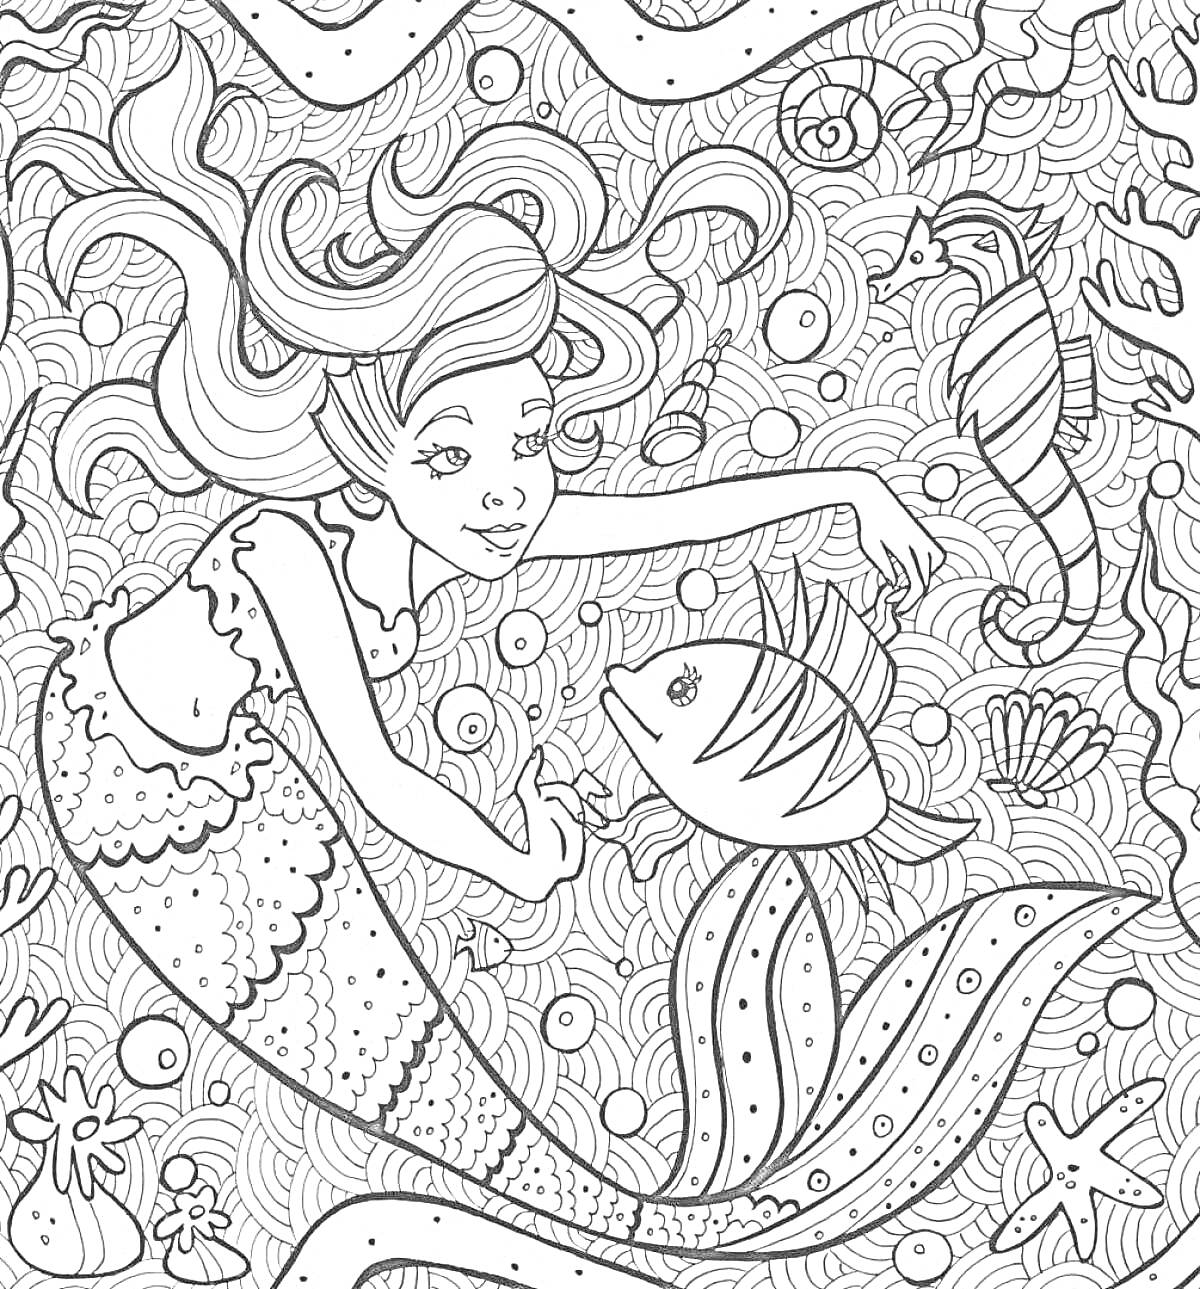 Раскраска Русалка с рыбой, морской конек и подводный мир